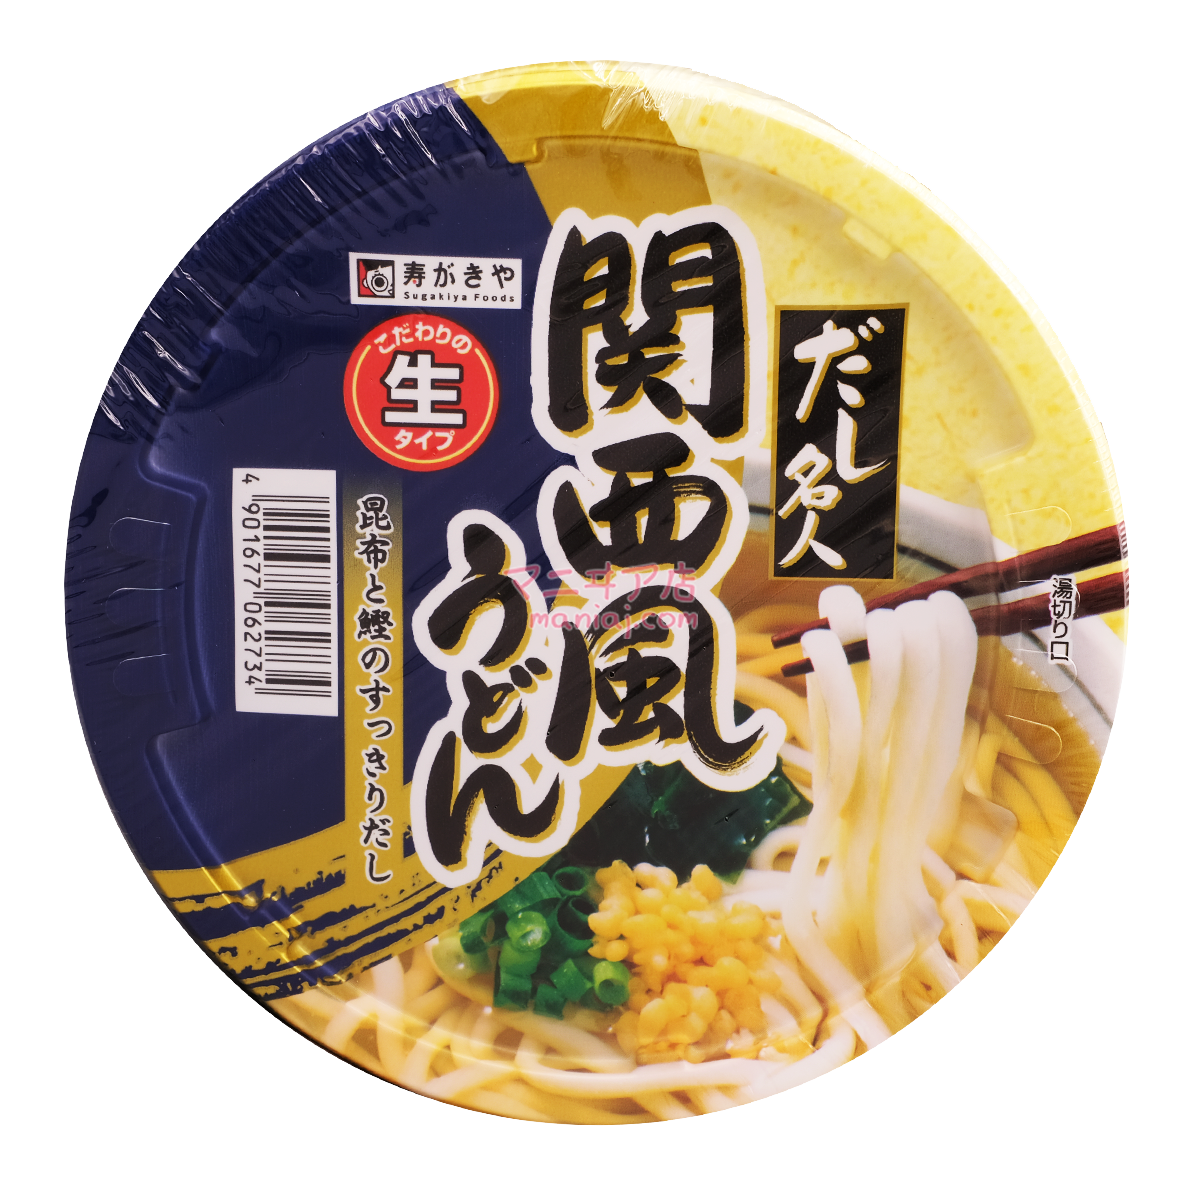 Soup Celebrity Kansai Style Udon